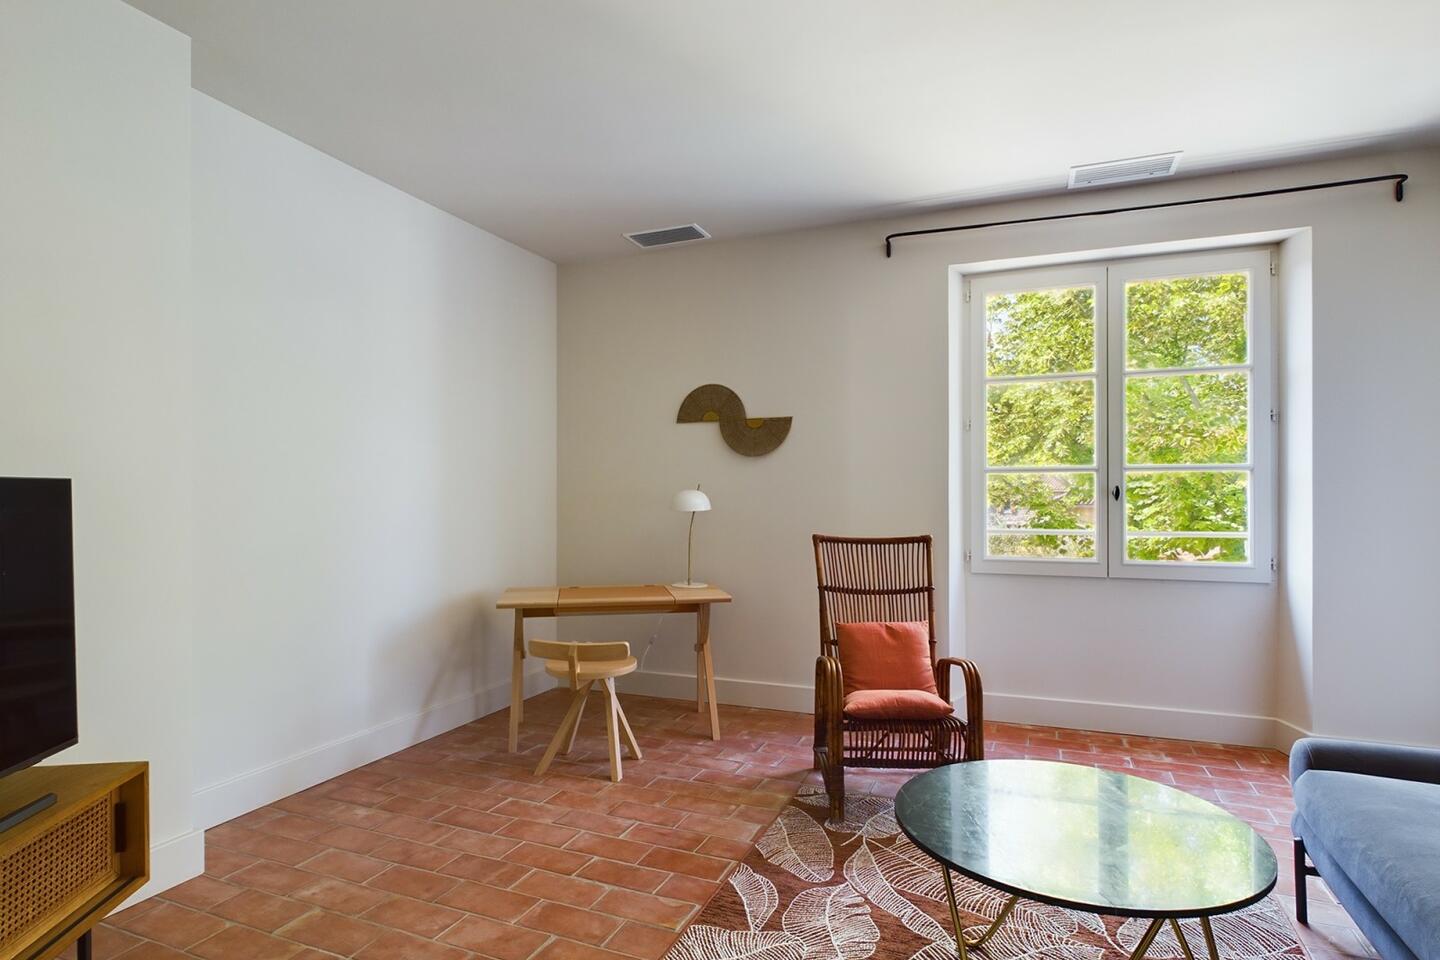 35 - Maison Mathilde: Villa: Interior